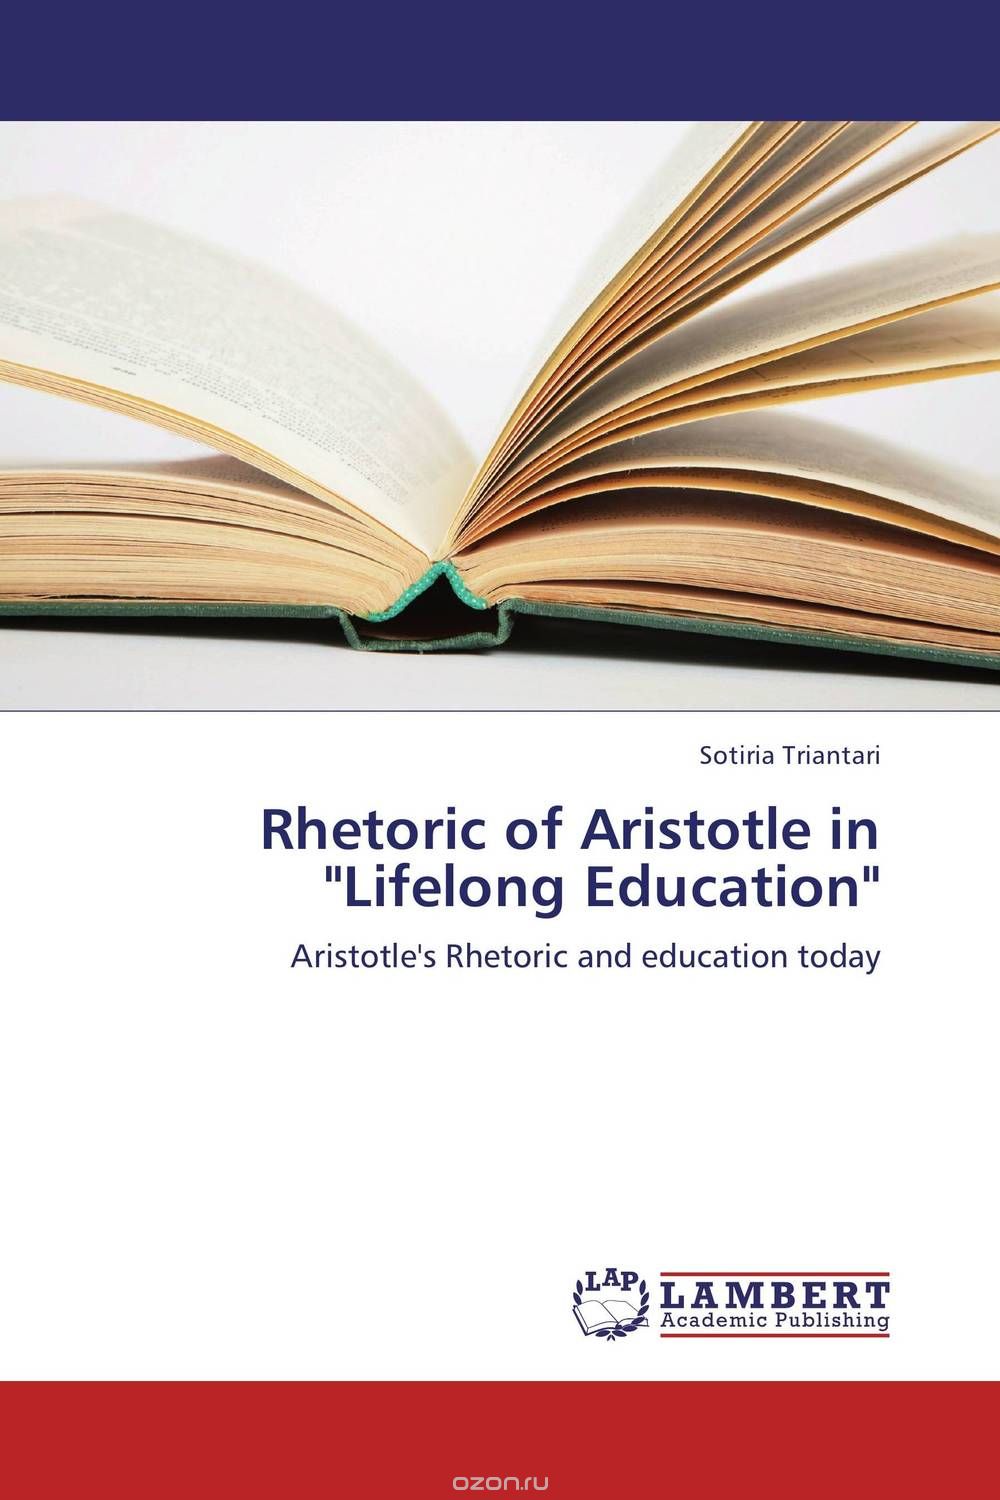 Скачать книгу "Rhetoric of Aristotle in "Lifelong Education""